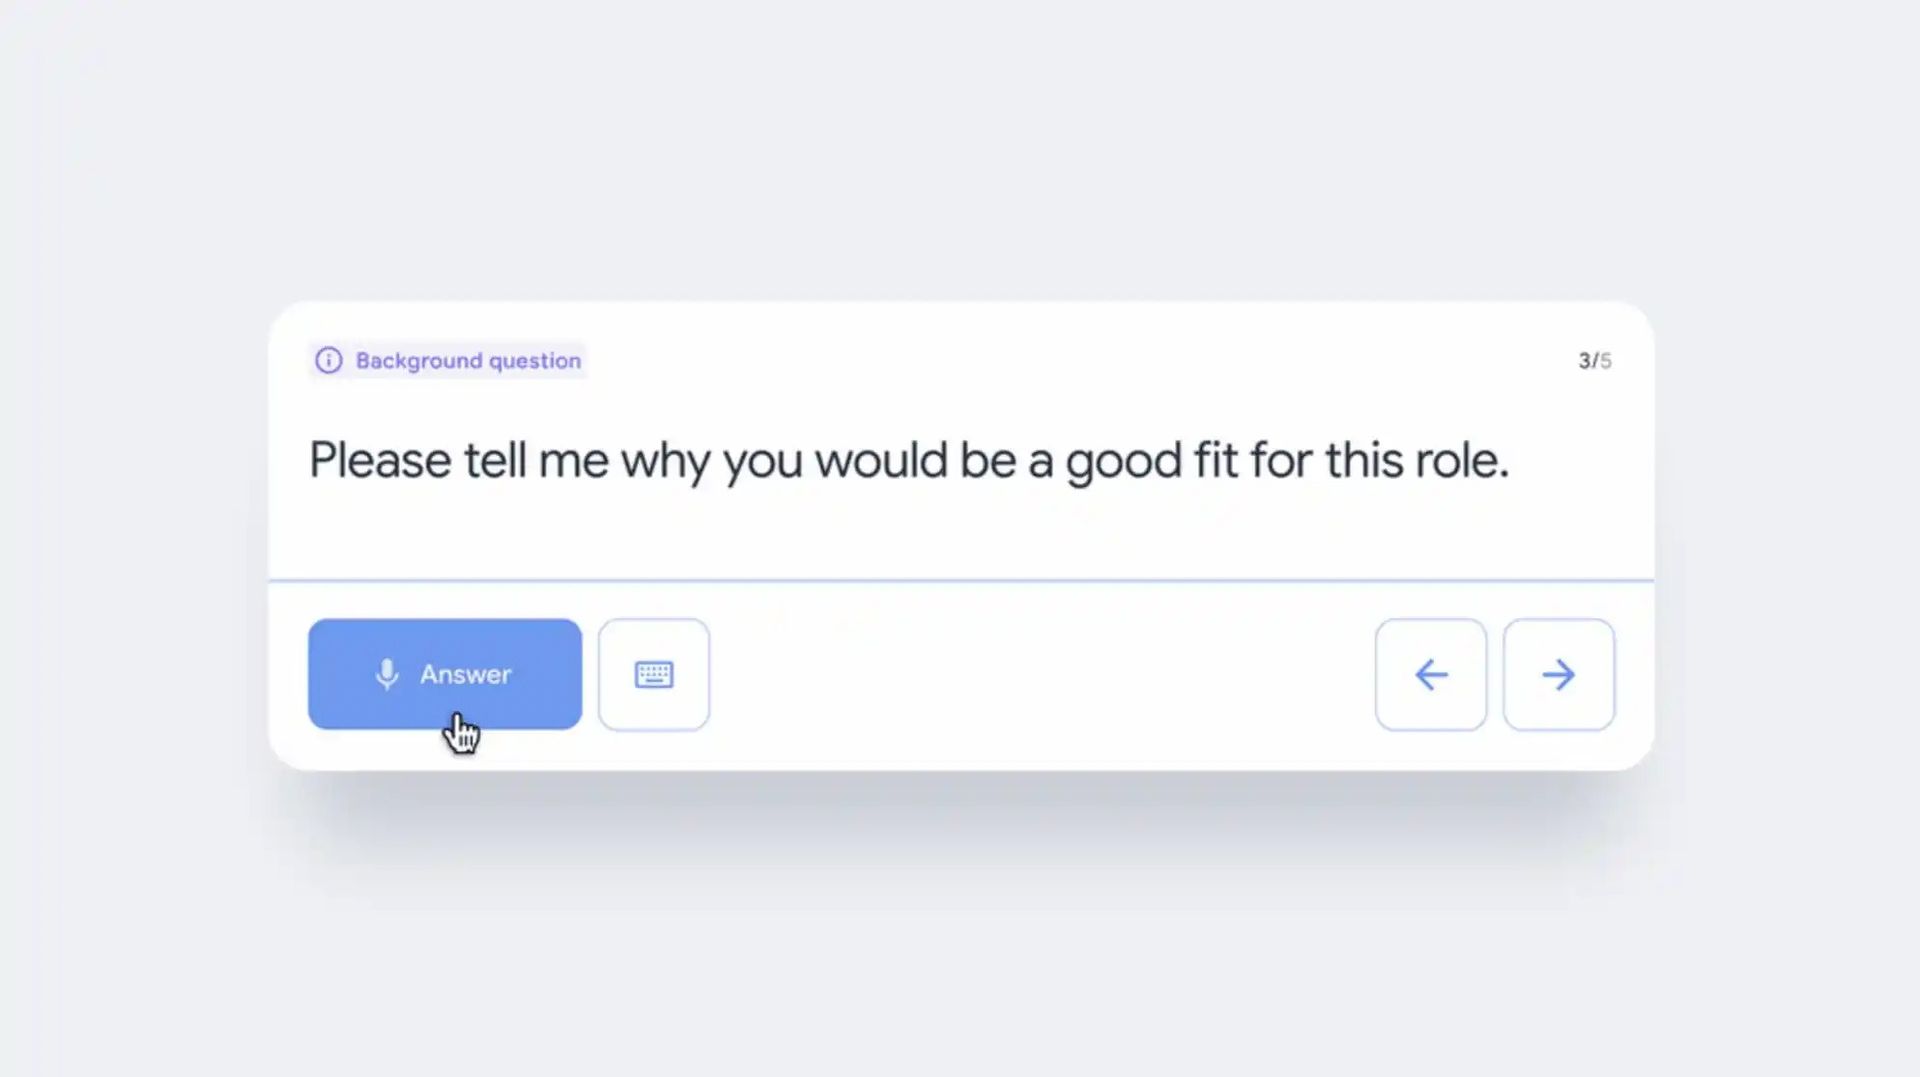 Si vous vous sentez nerveux avant un entretien d'embauche, le nouvel outil d'intelligence artificielle appelé Google Interview Warmup vous aidera à vous entraîner au préalable.  Google dispose désormais d'un outil pour aider les candidats à s'entraîner aux entretiens d'embauche.  Il est vrai que les entretiens d'embauche peuvent être stressants.  Vous pouvez vous entraîner et être mieux préparé avant de passer un entretien grâce au nouvel outil de Google.